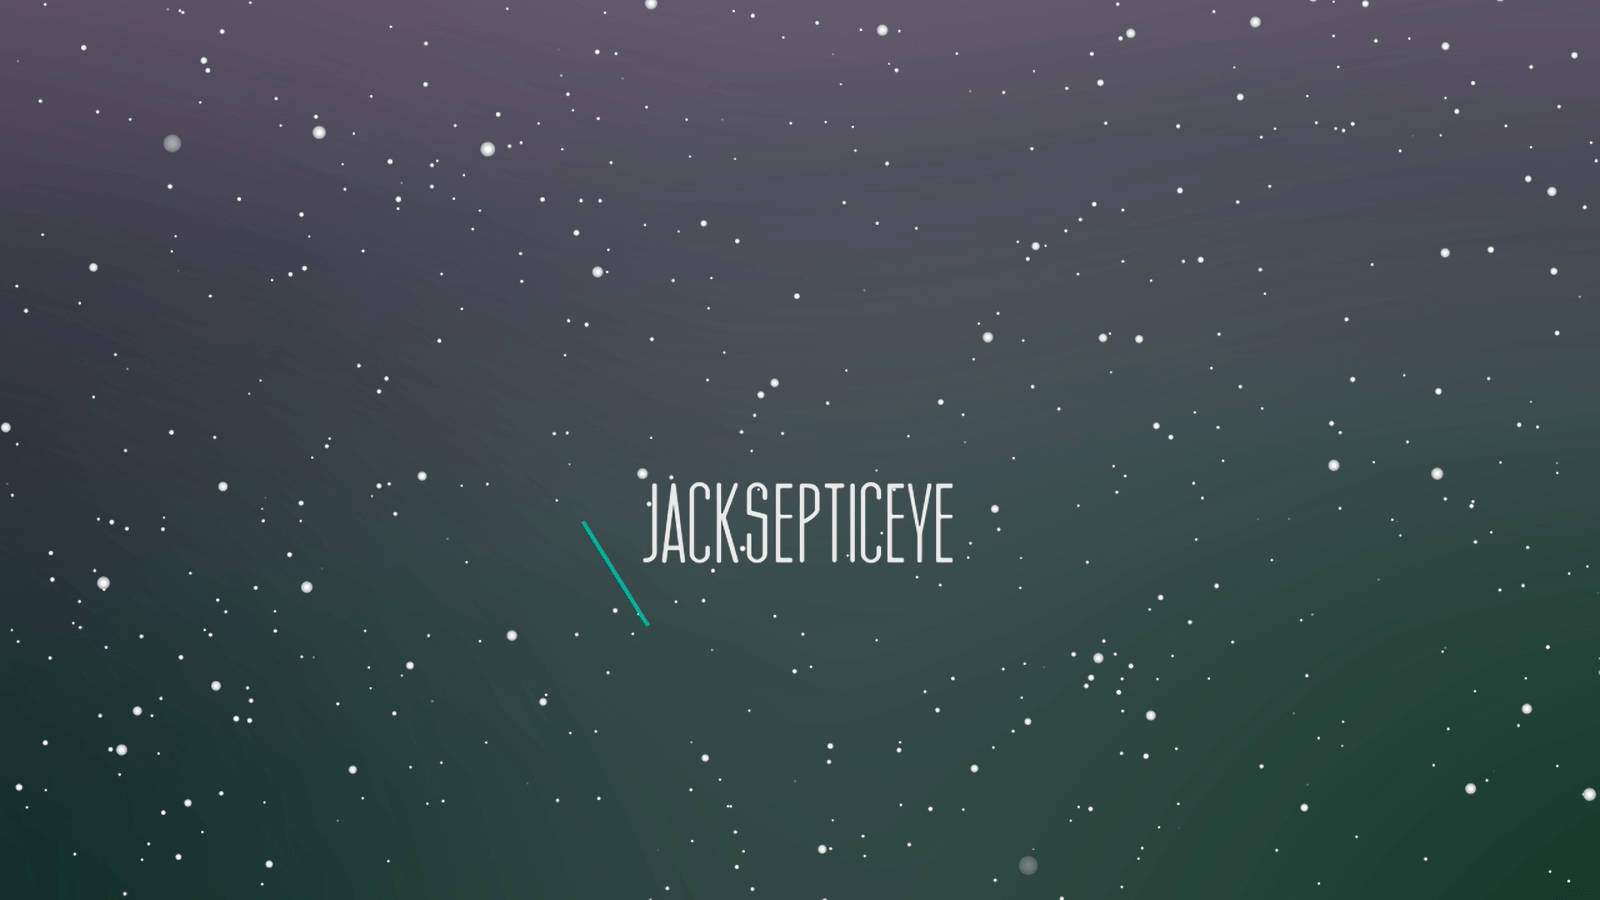 Jacksepticeye Night Sky Baggrundsbillede: Se himlen og se stjernerne skinne i et mørkt og afkølet miljø. Wallpaper